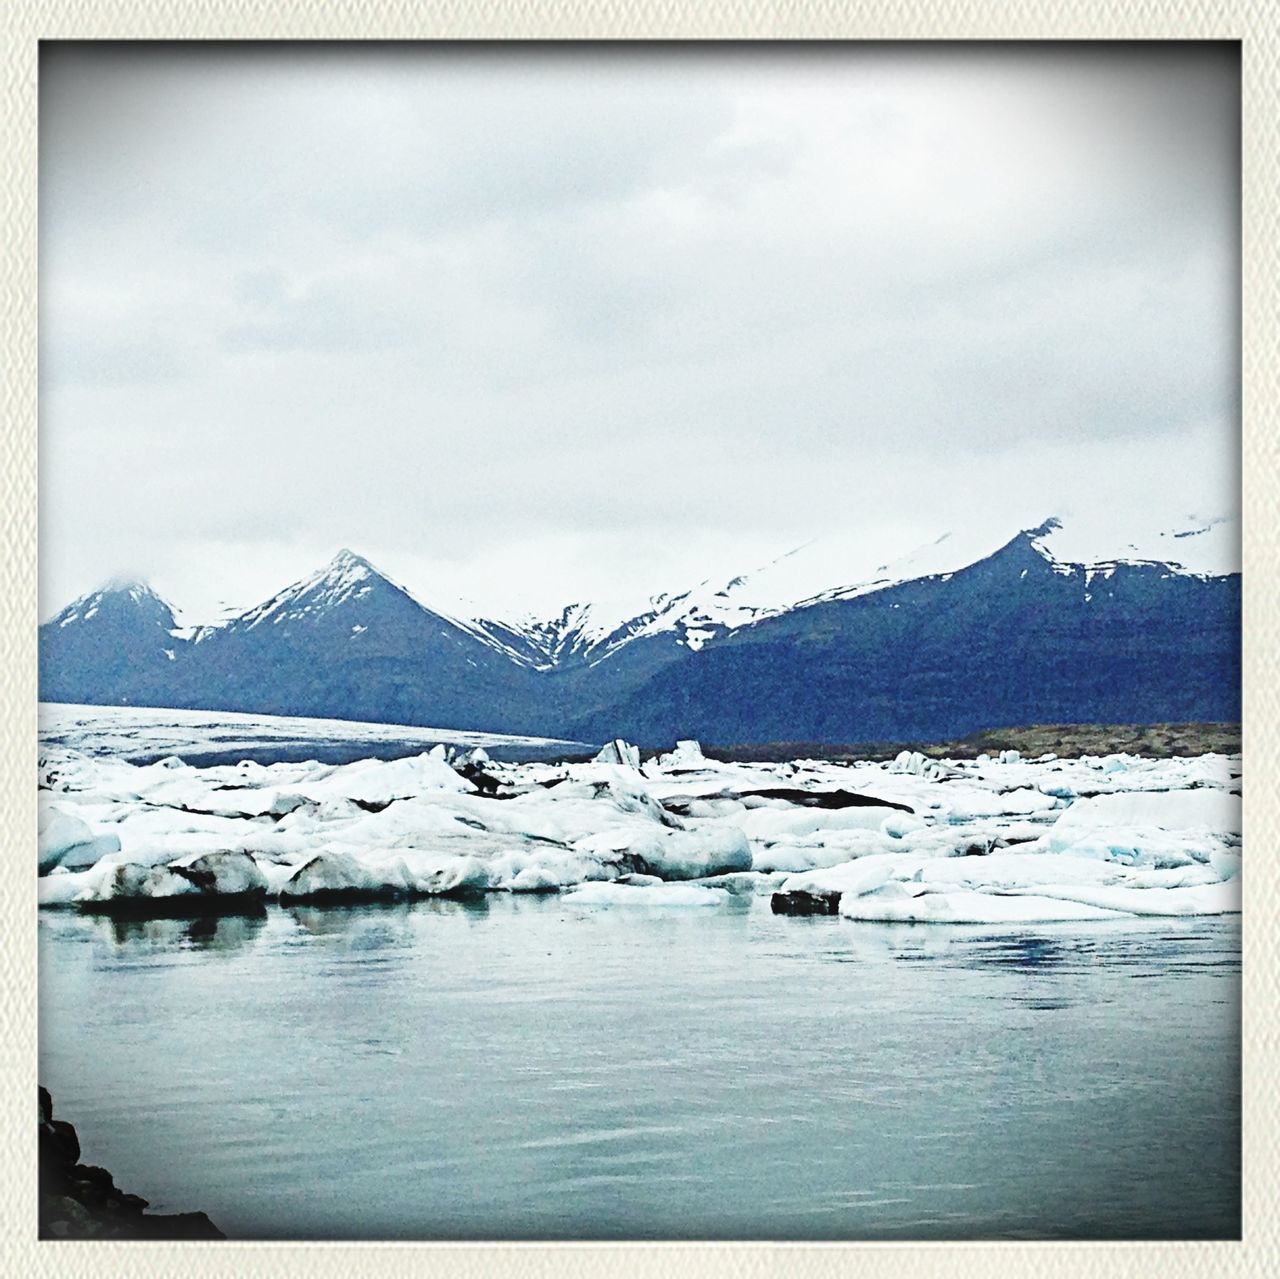 Jökulsárlón [Glacier Bay]